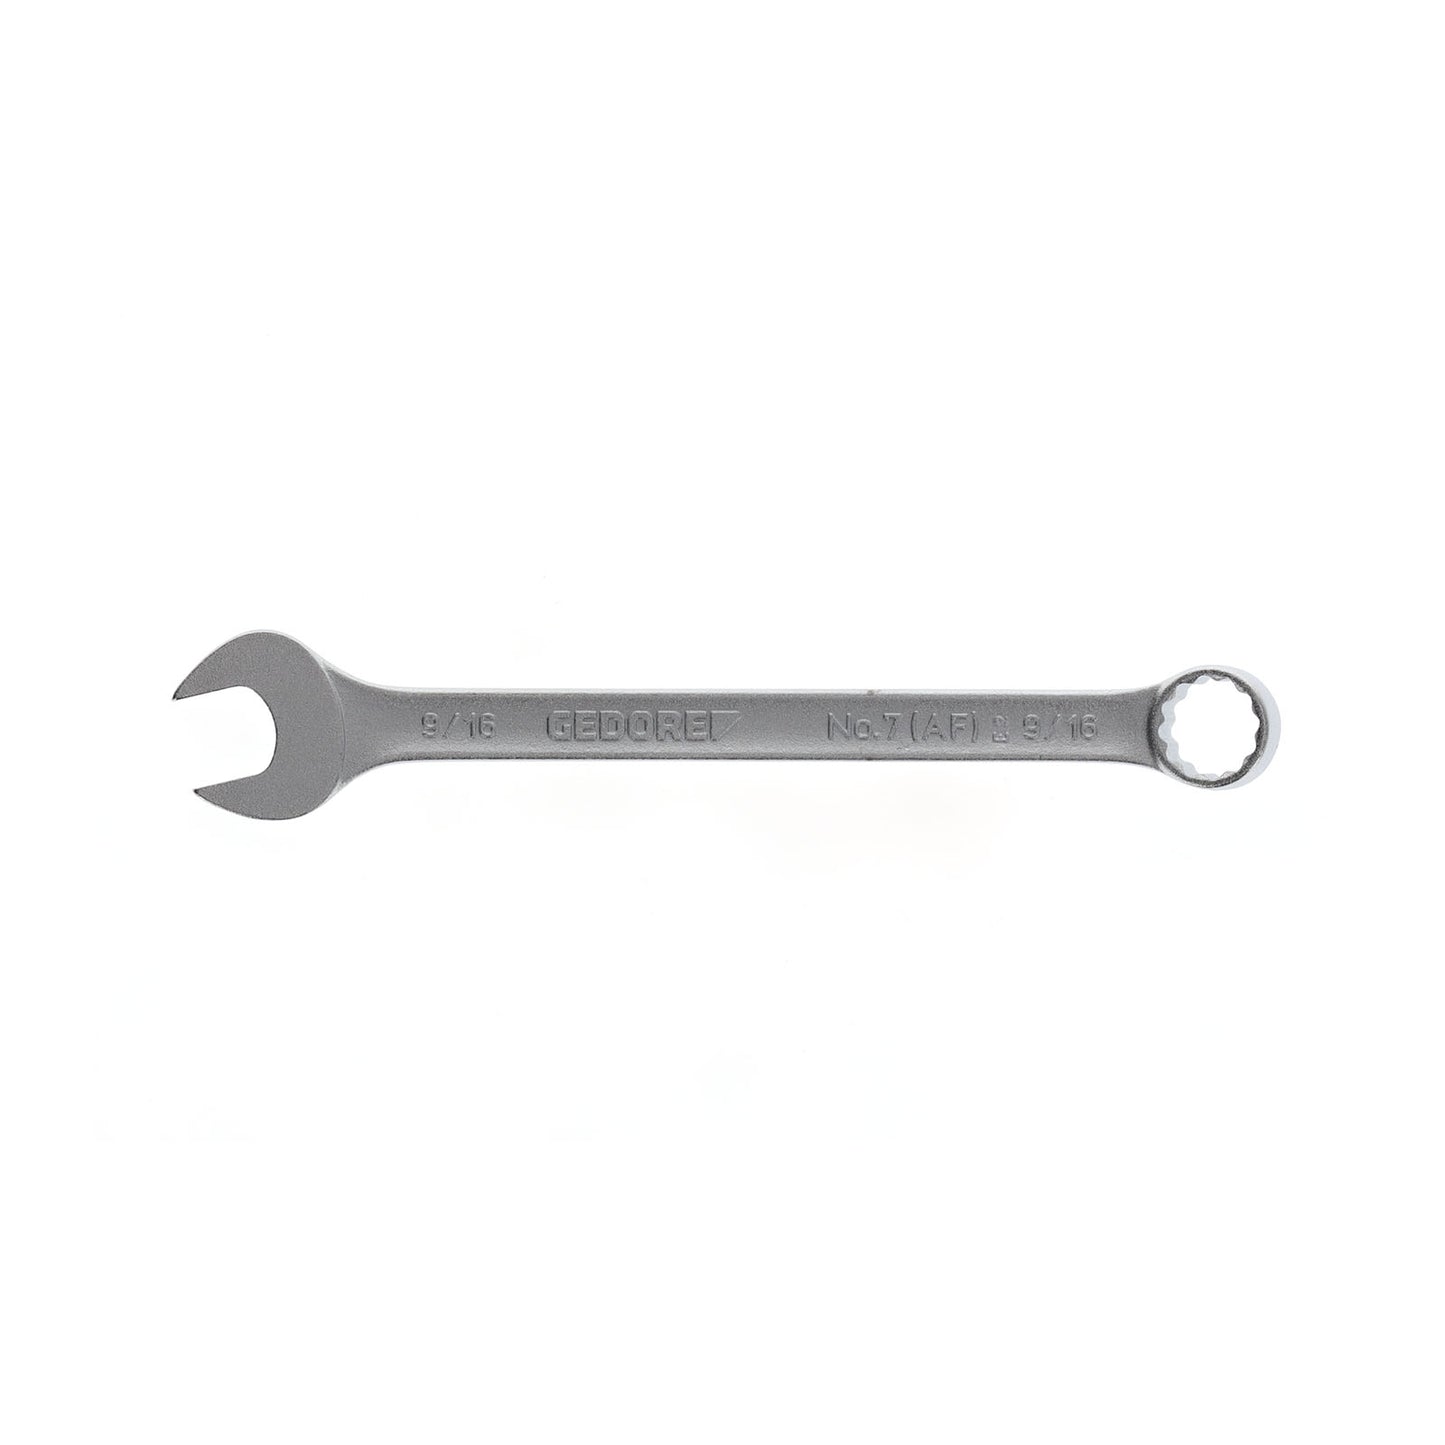 GEDORE 7 9/16AF - Combination Wrench, 9/16AF (6099510)